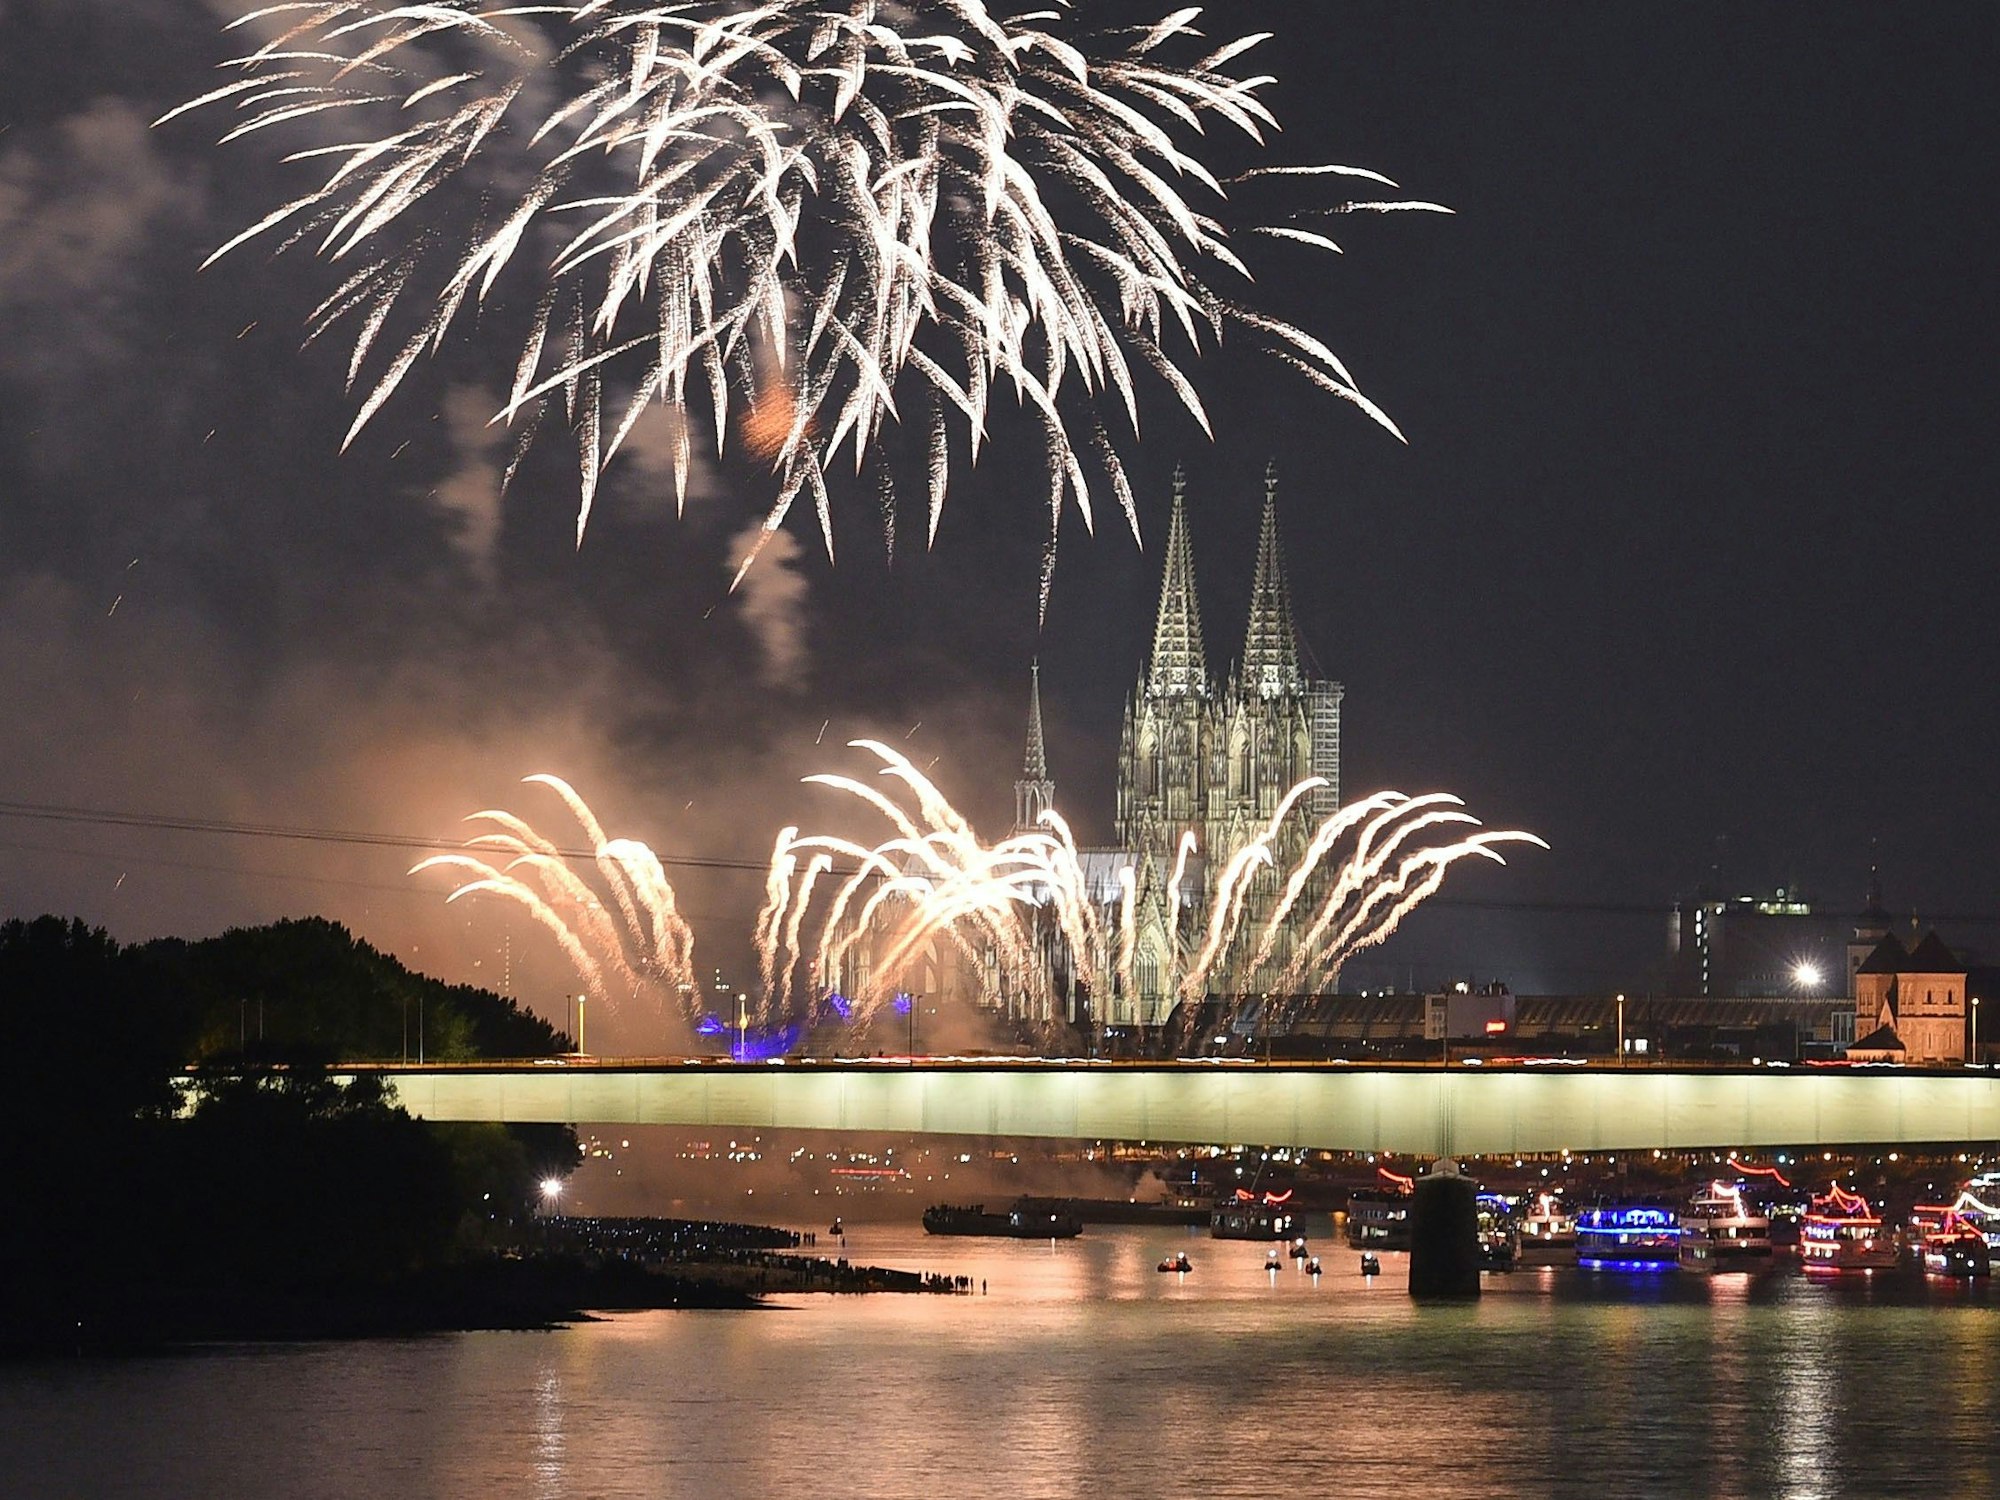 Feuerwerkskörper erhellen beim Feuerwerksspektakel Kölner Lichter den Himmel